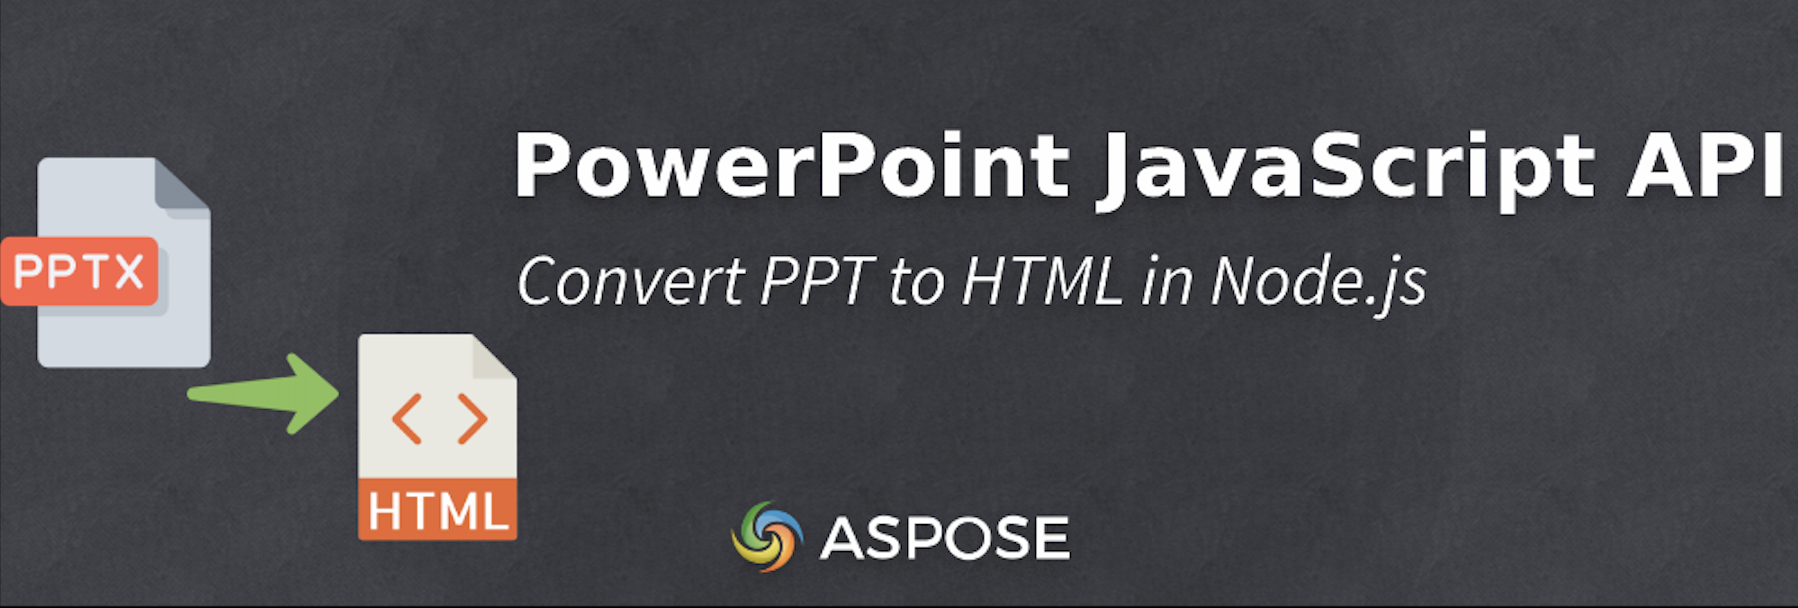 تحويل PPT إلى HTML في Node.js - PowerPoint JavaScript API